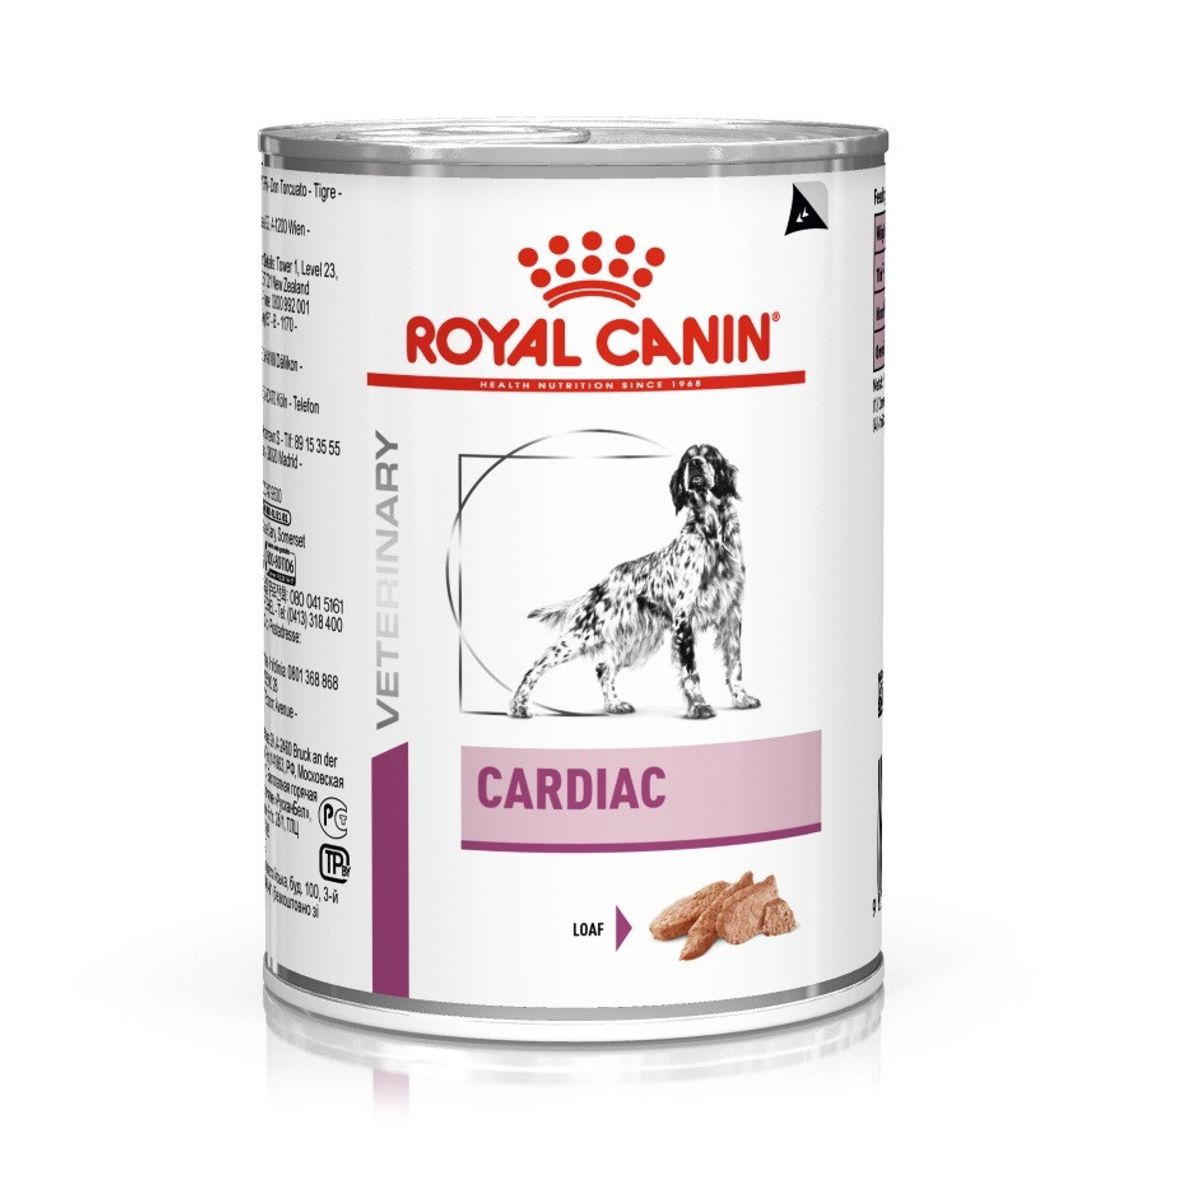 Cardiac (12 boites 410 g) - Royal Canin Veterinary Diet